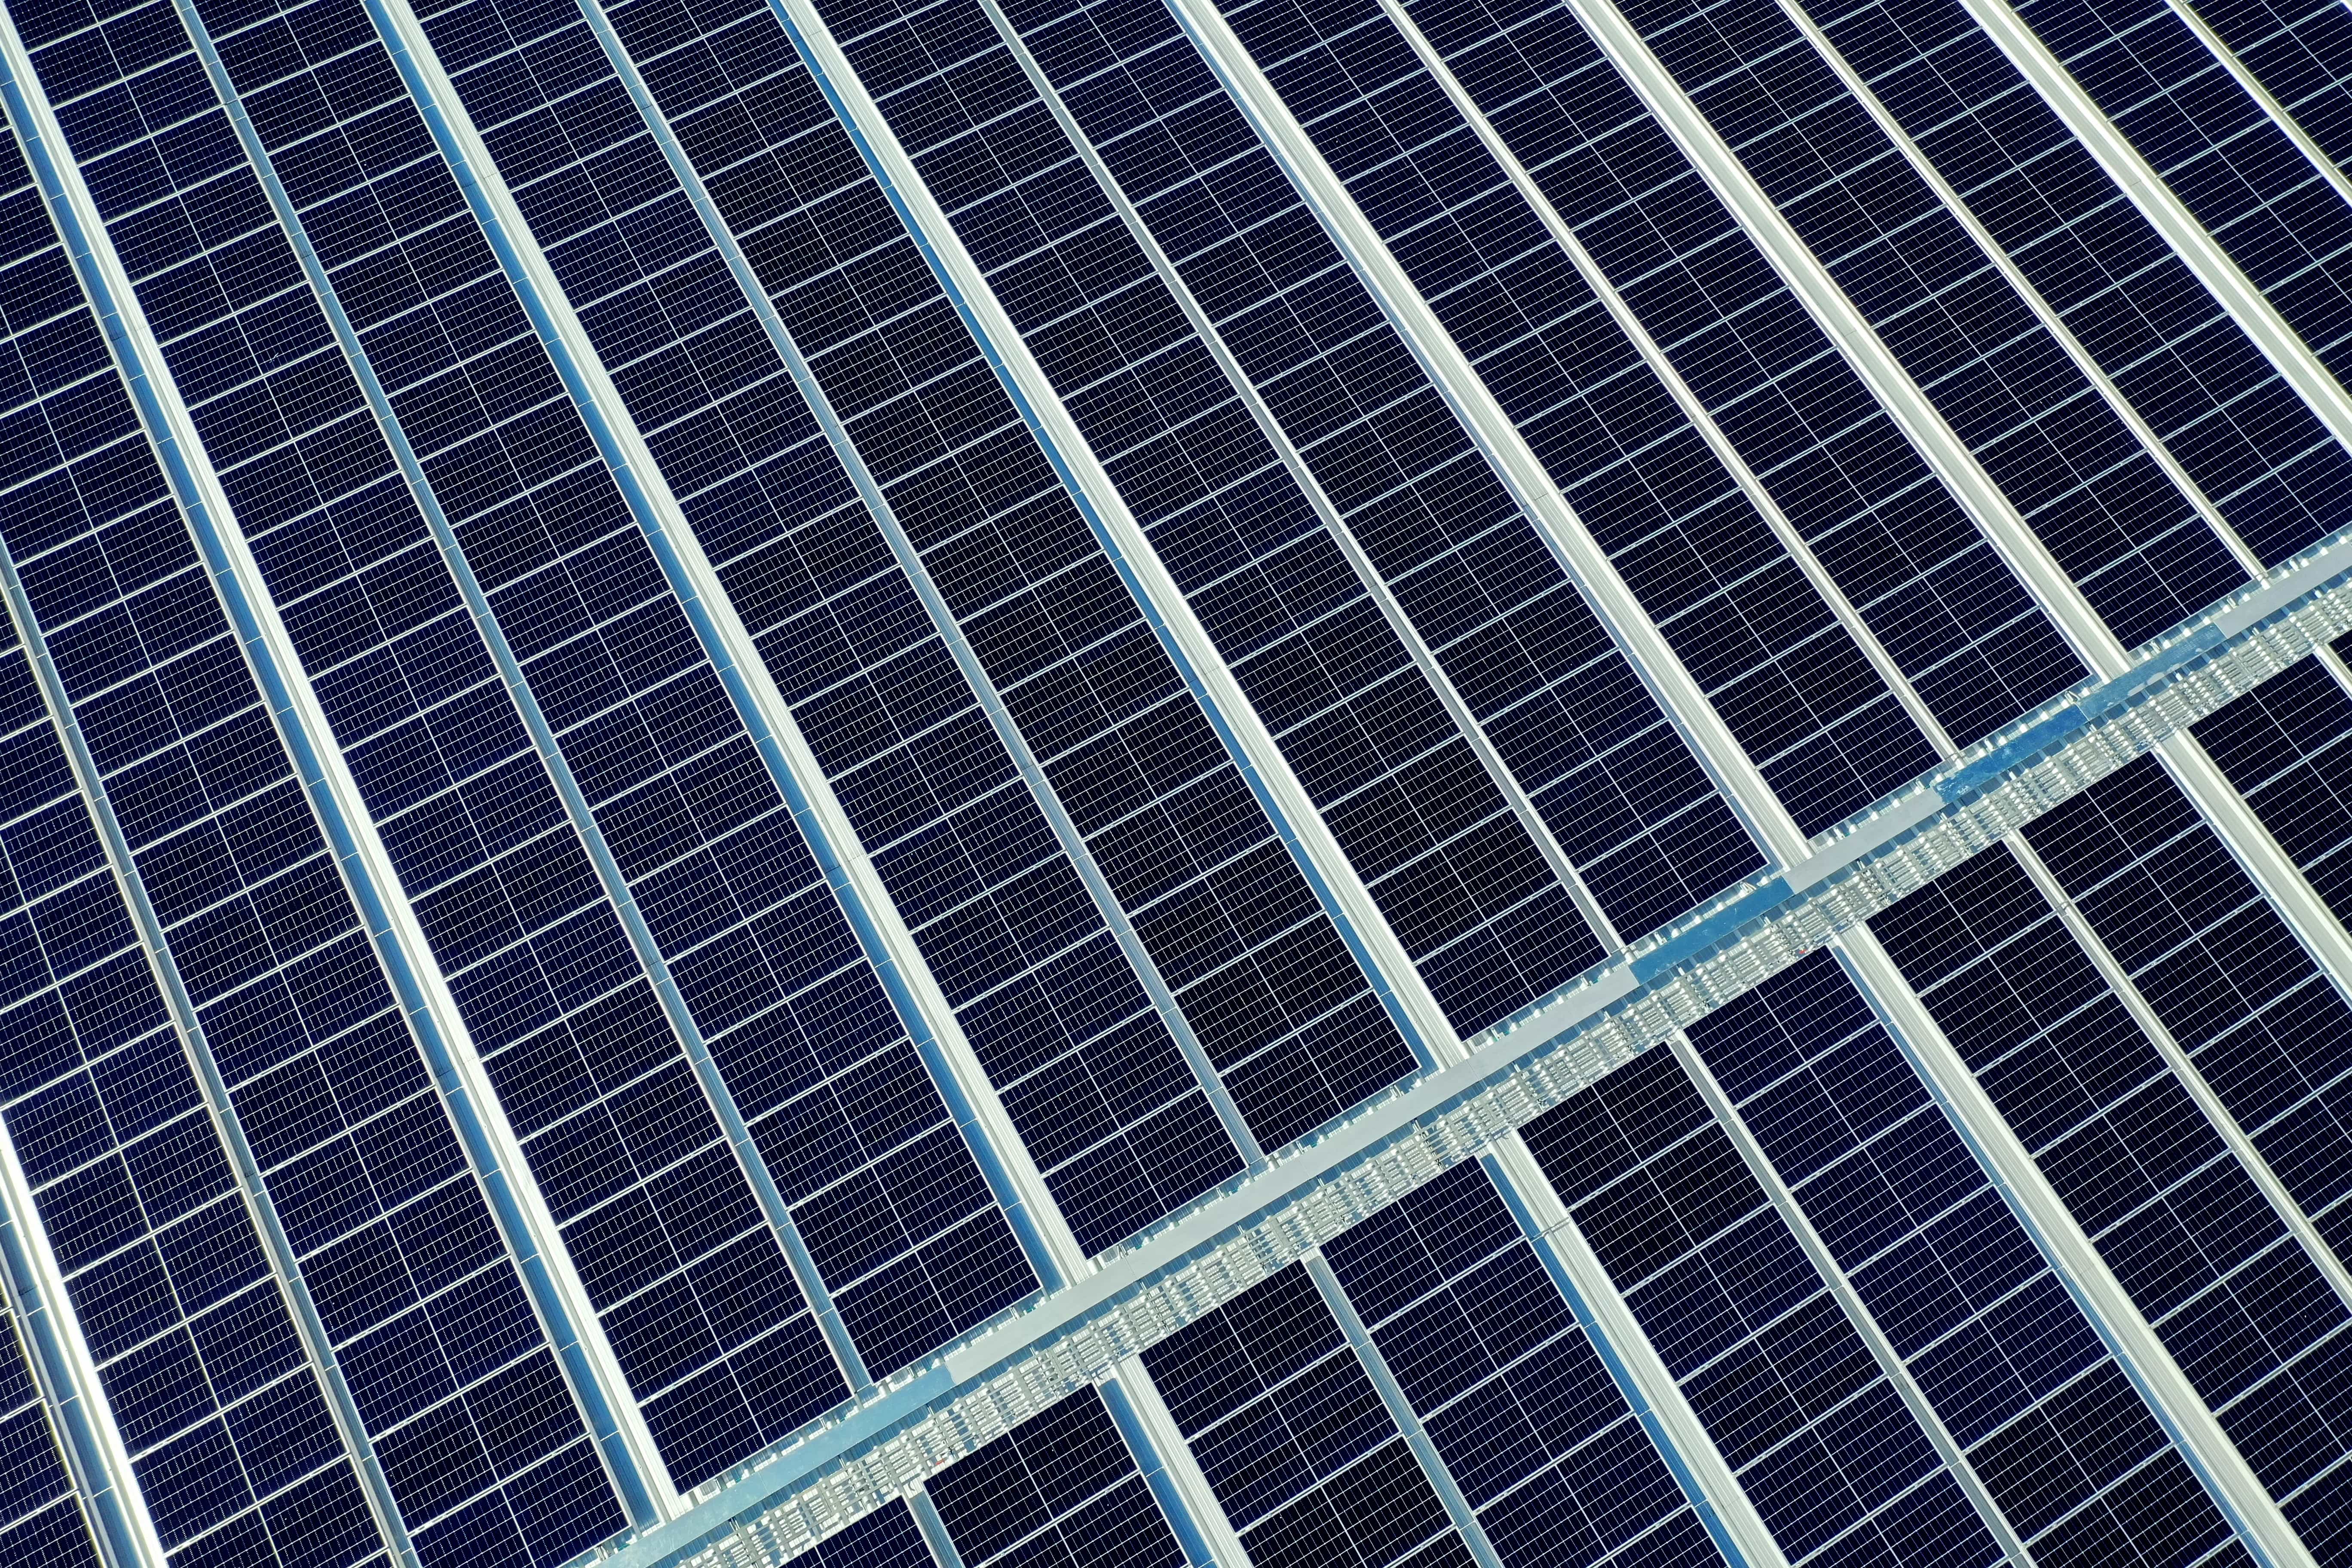 Instalace fotovoltaiky do 50kw nyní bez licence a stavebního povolení. Zeman podepsal revoluční novelu energetického zákona